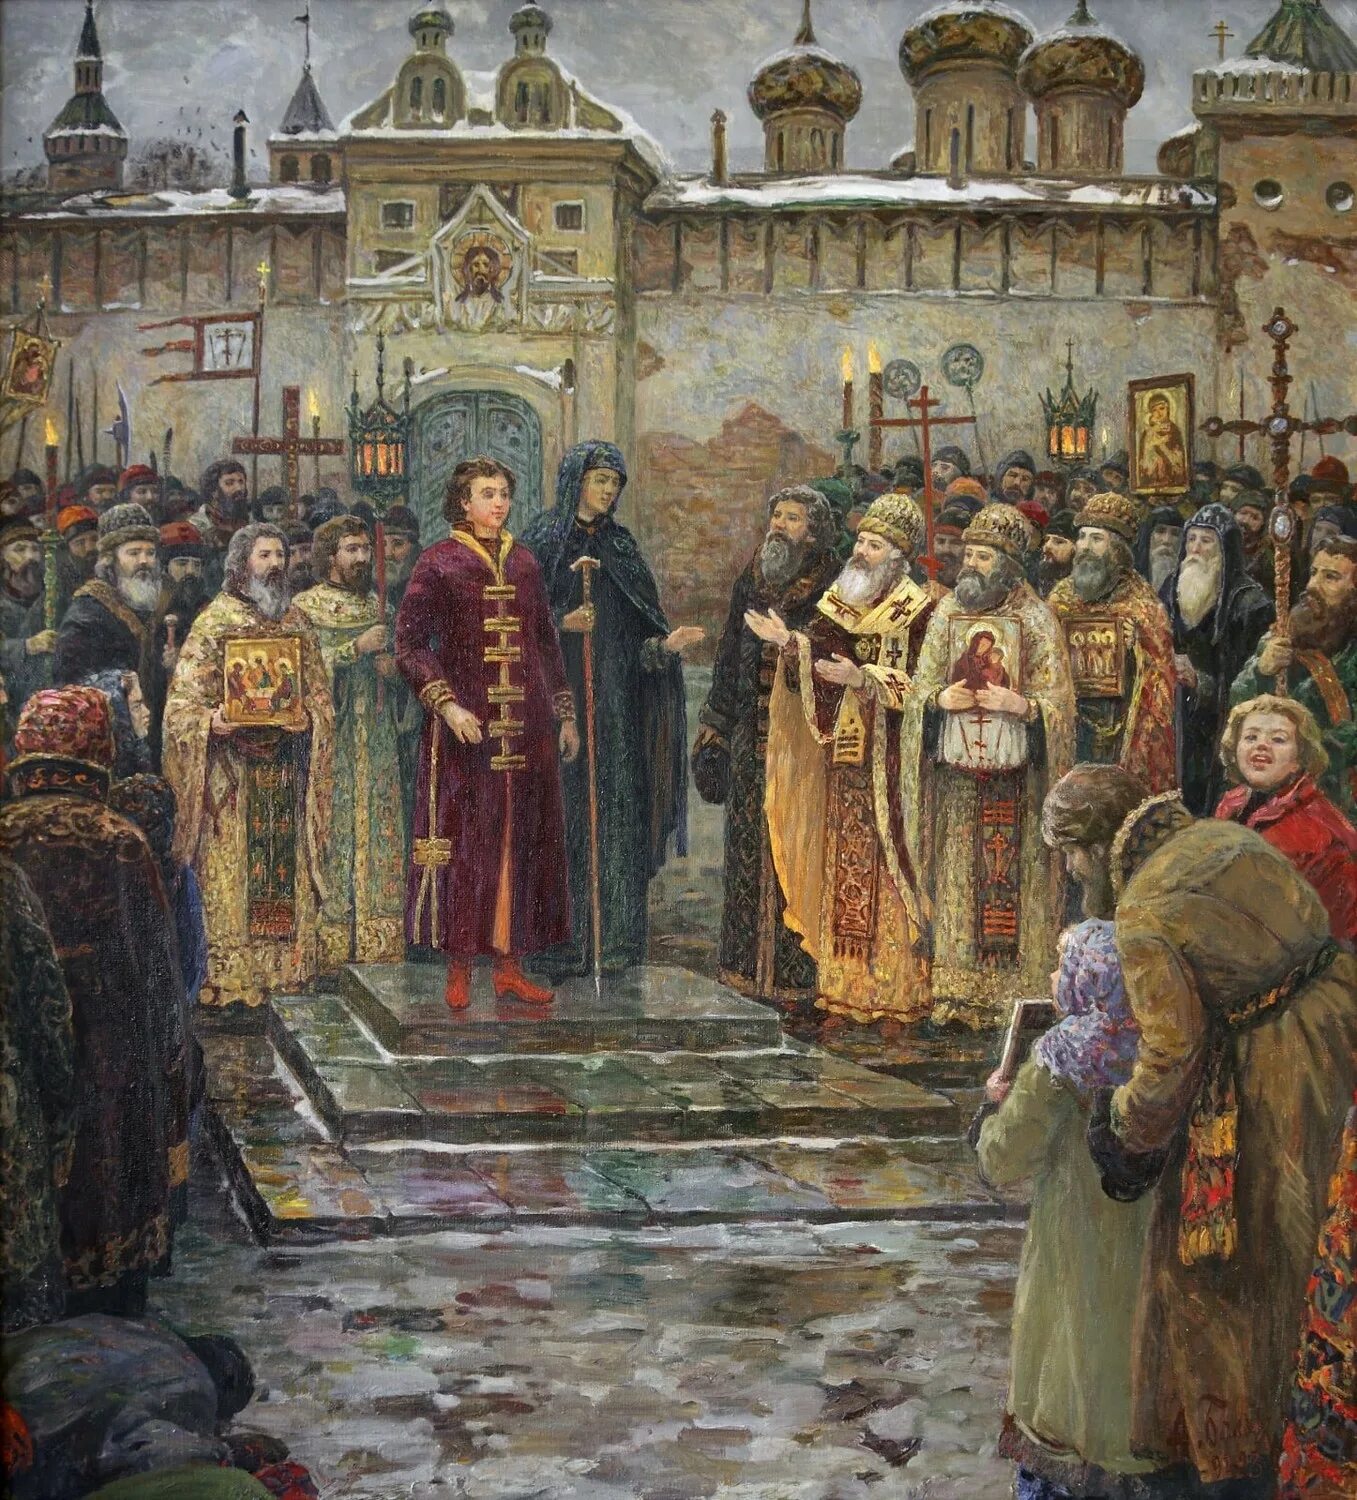 Избрание на царство Михаила Федоровича Романова. Высший совет русского царства состоявший